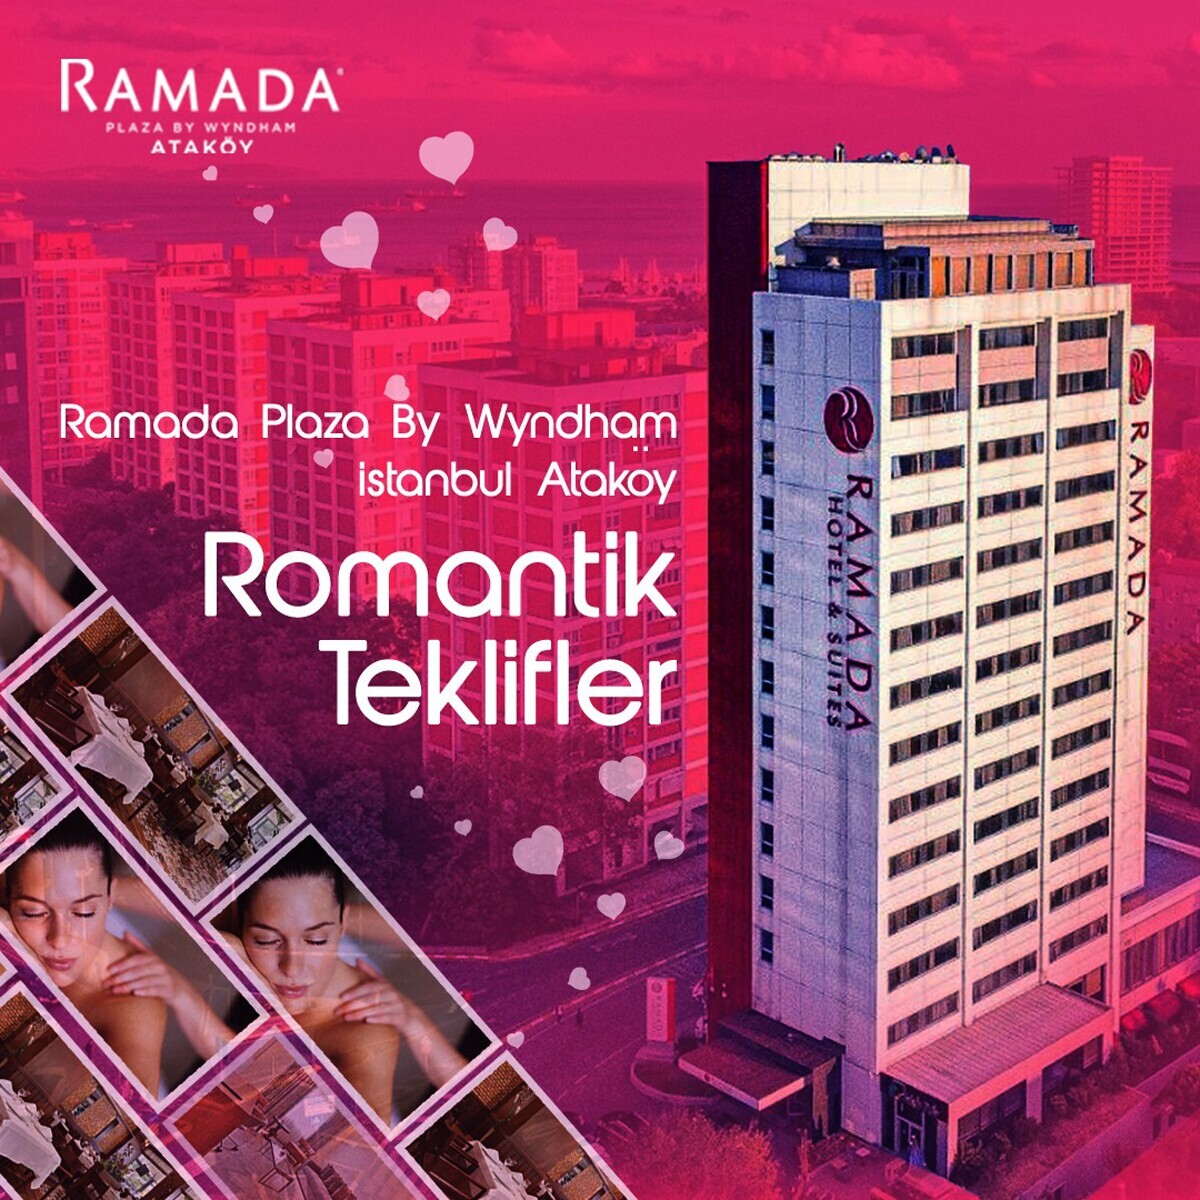 Ataköy Ramada Plaza By Wyndham Istanbul'Da 2 Kişilik Romantik Paketler